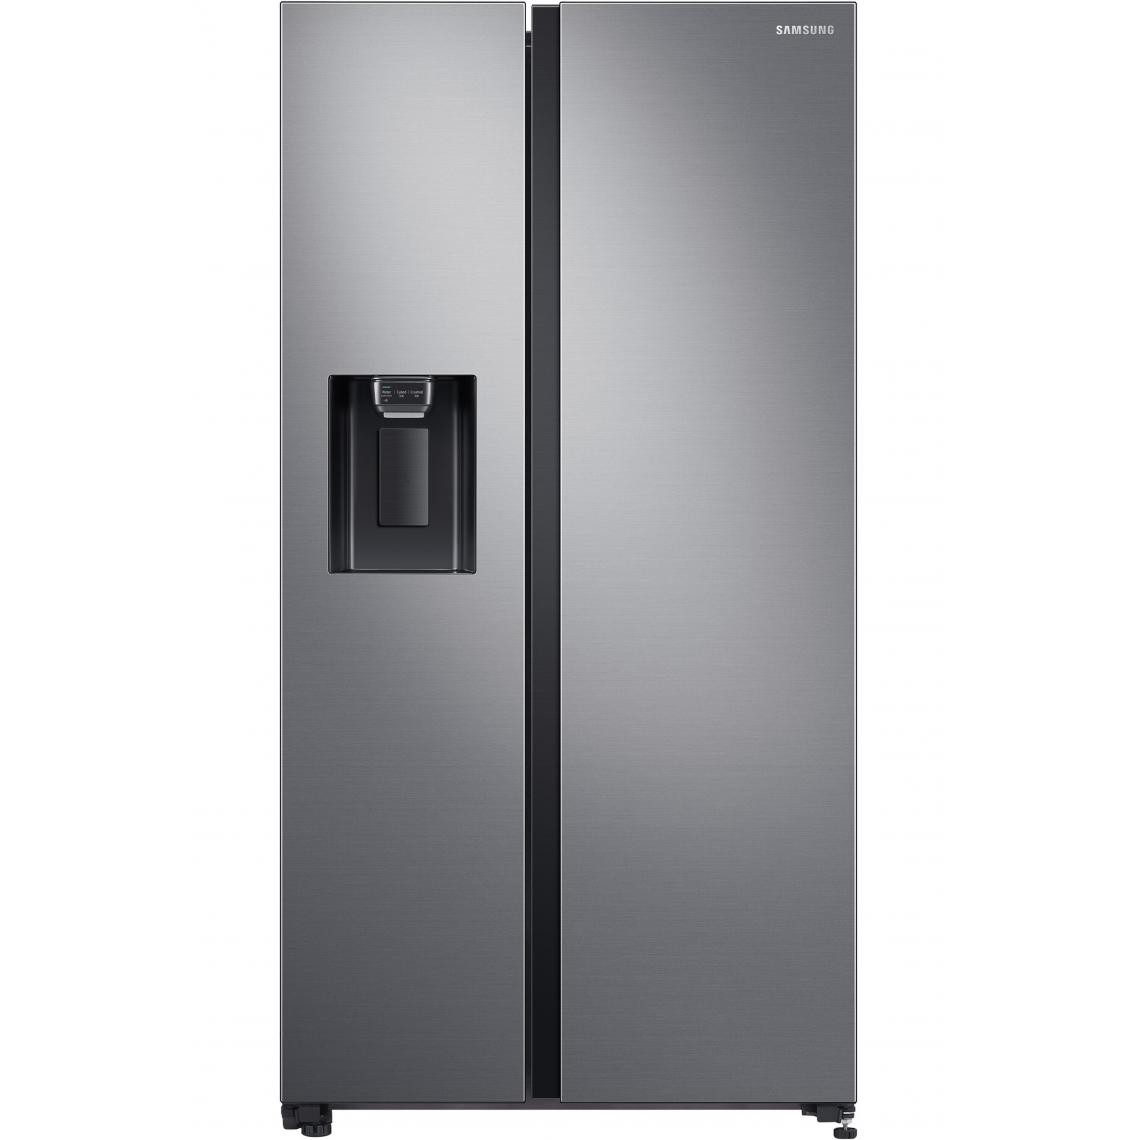 Samsung - Refrigerateur americain Samsung RS65R5401M9 - Réfrigérateur américain